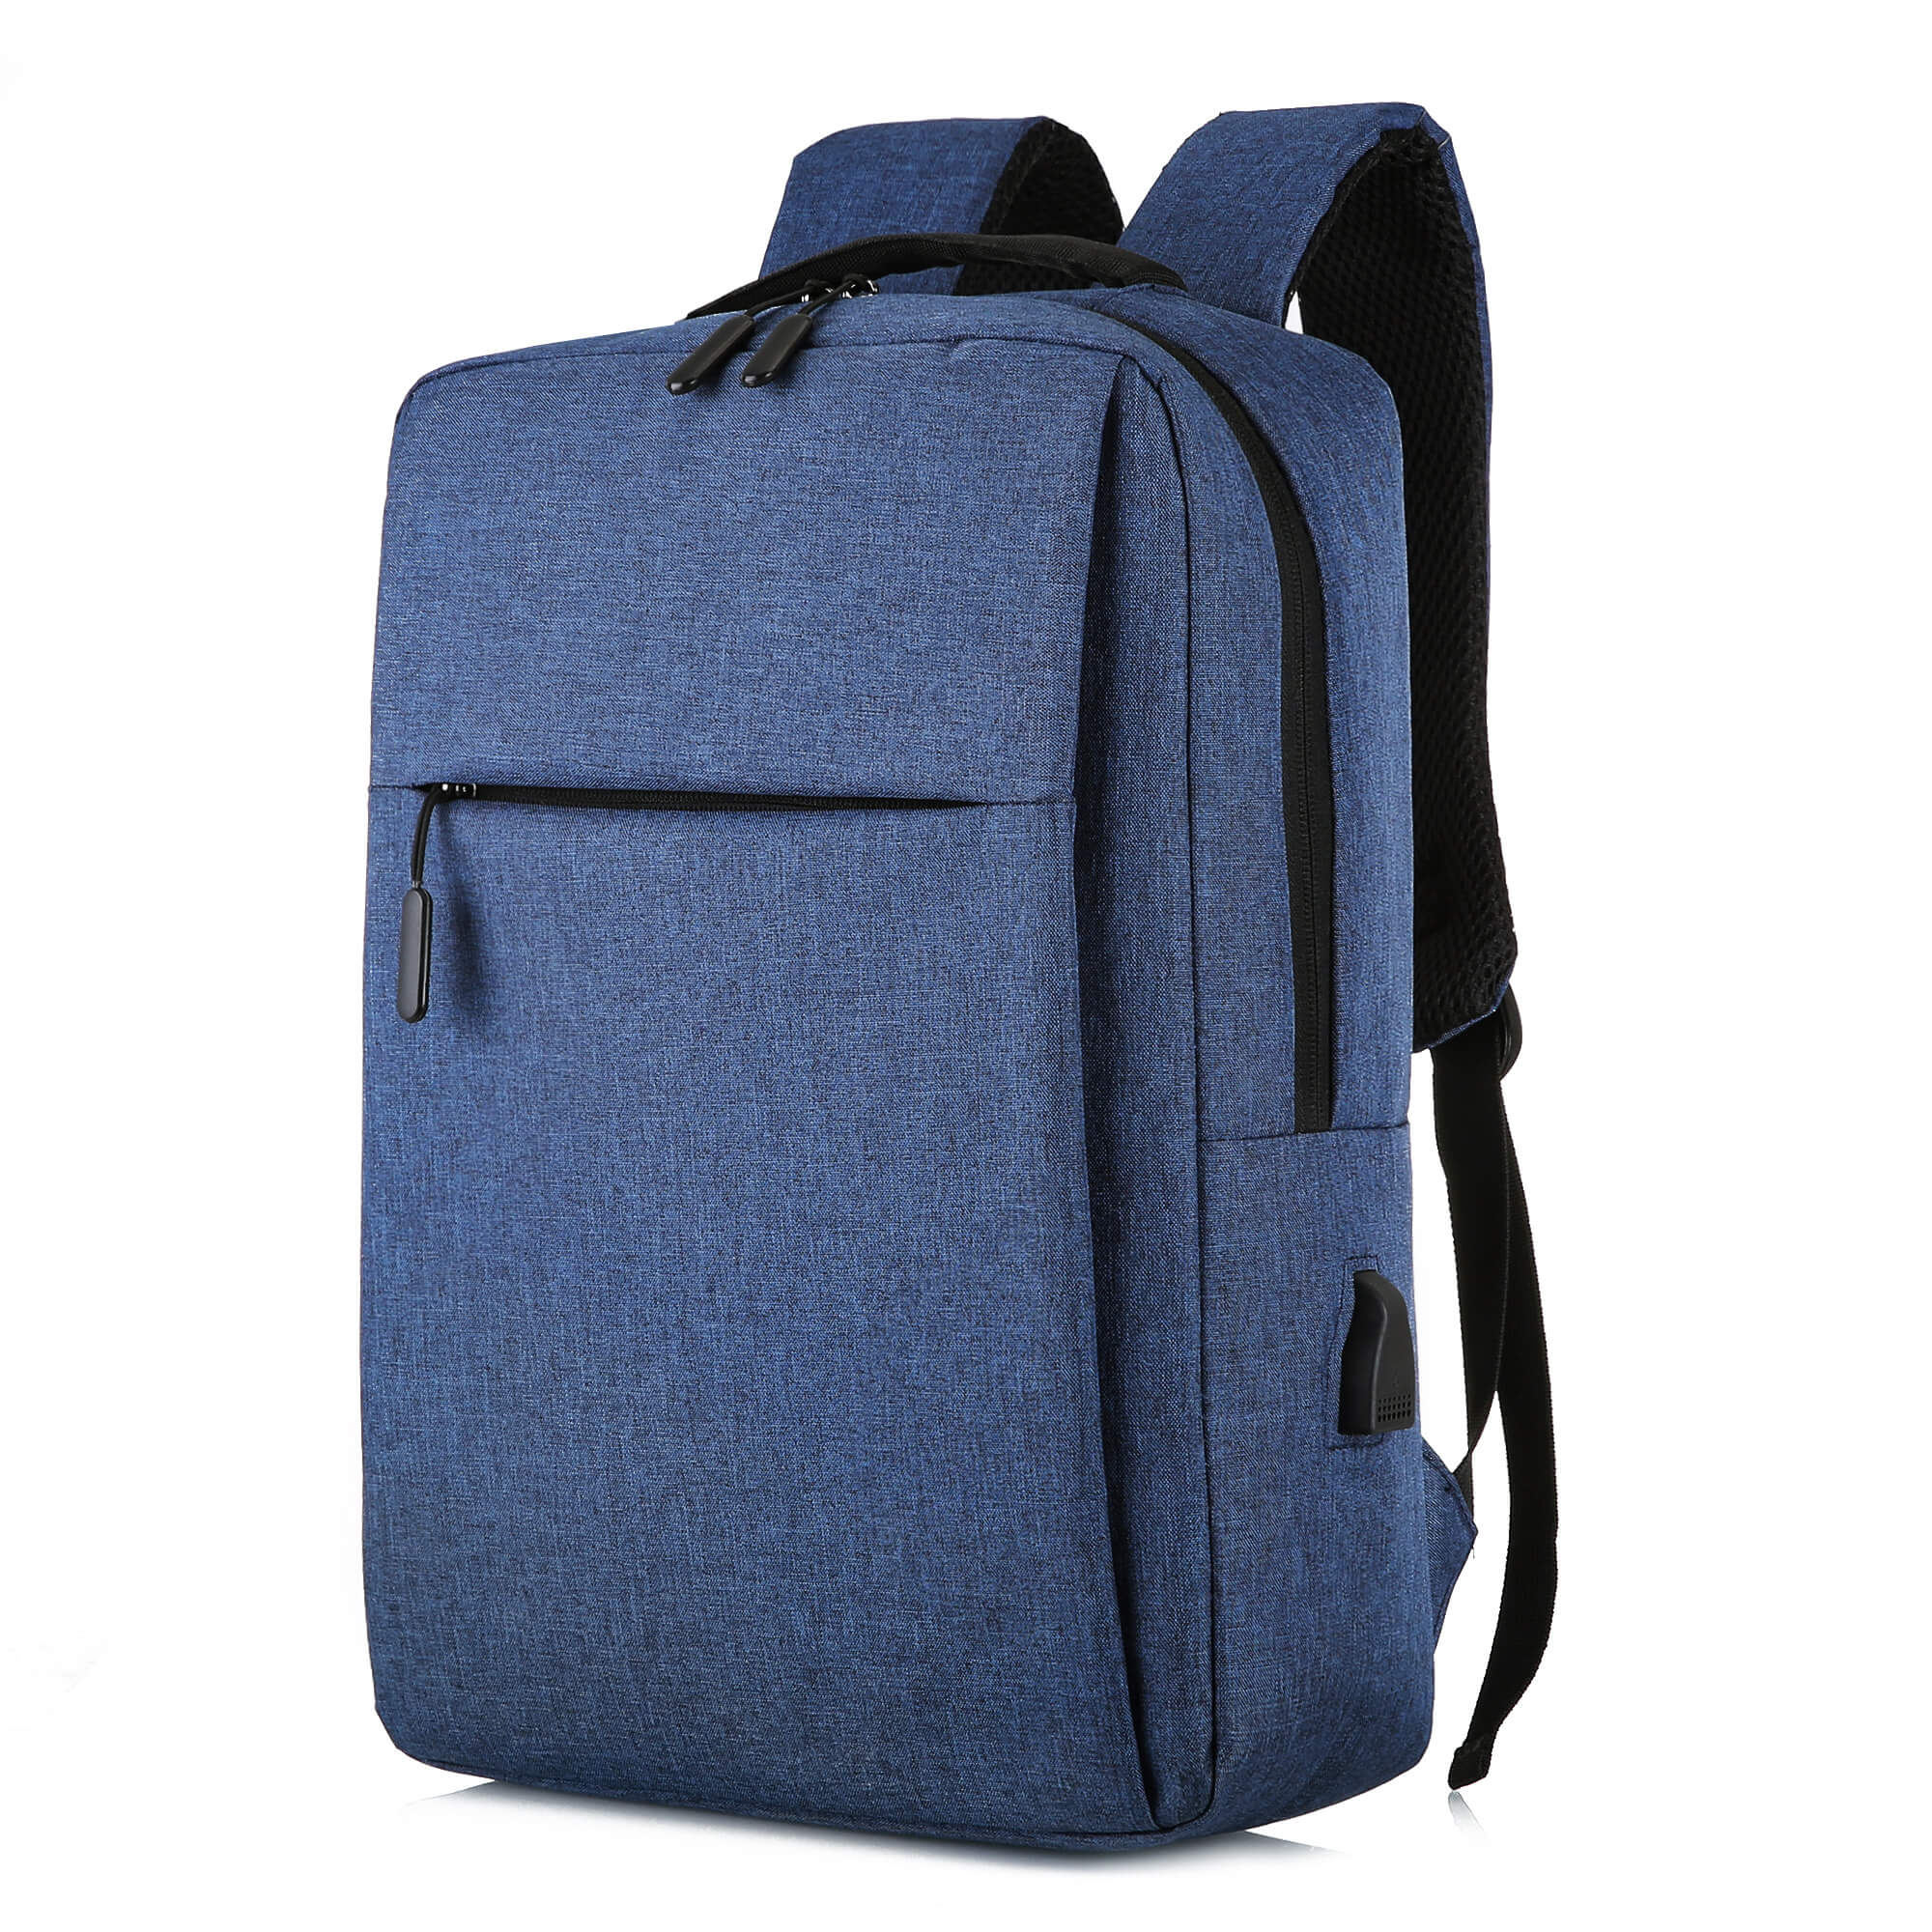 Discount ambongadiny Climbing Backpack - OMASKA 2021 lafo indrindra amidy TSX1803 kitapom-batsy an-tsekoly mifaninana - Omaska